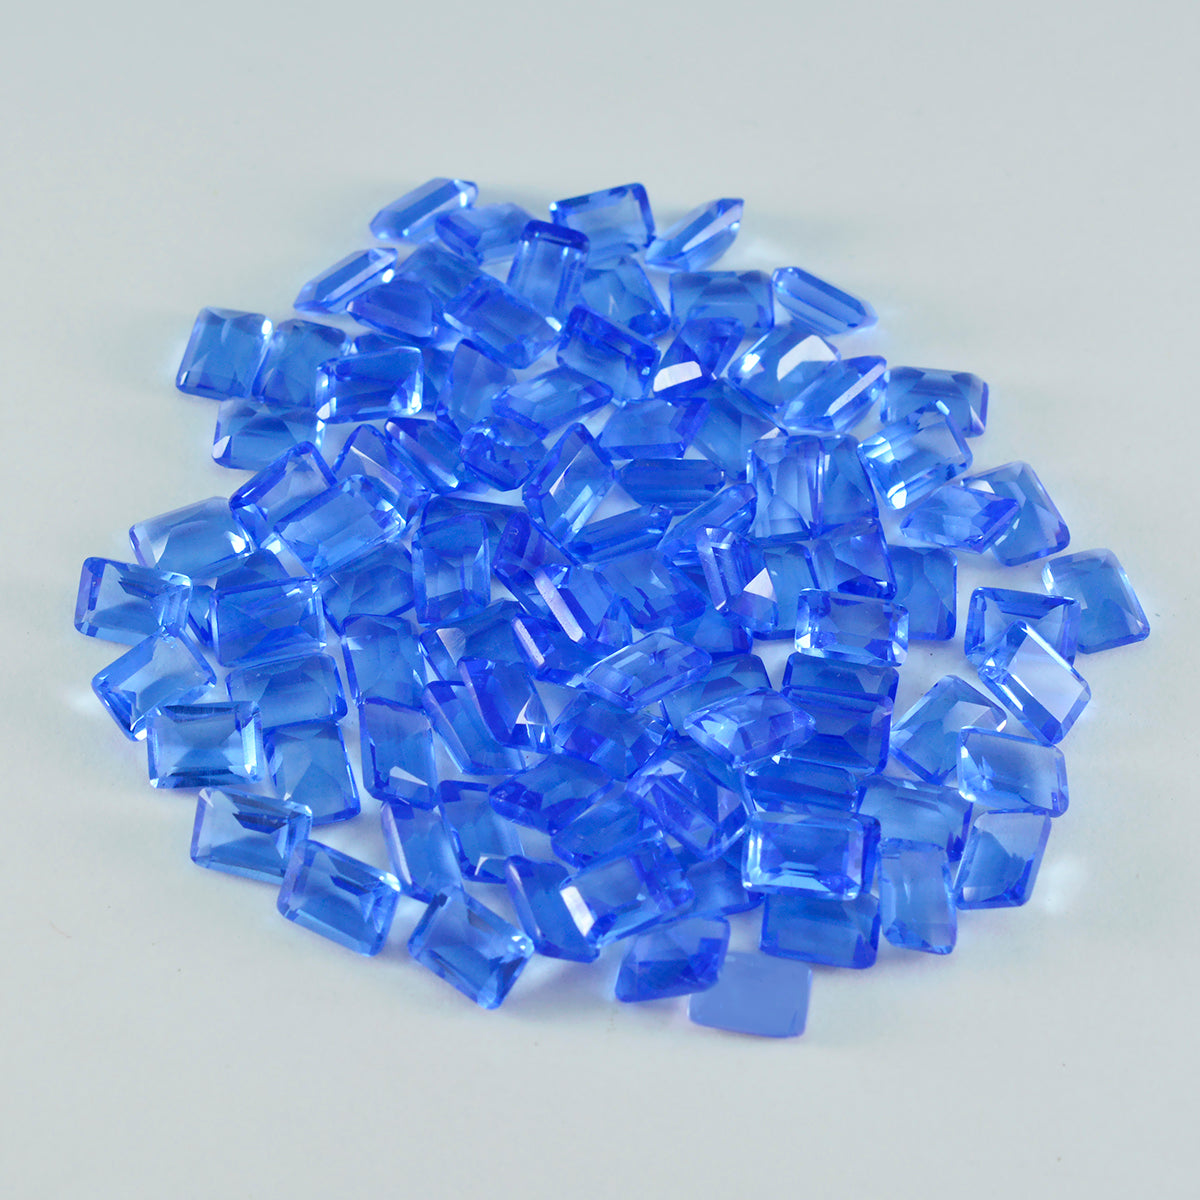 Riyogems 1 Stück blauer Saphir, CZ, facettiert, 3 x 5 mm, Achteckform, hübsche Qualitätsedelsteine